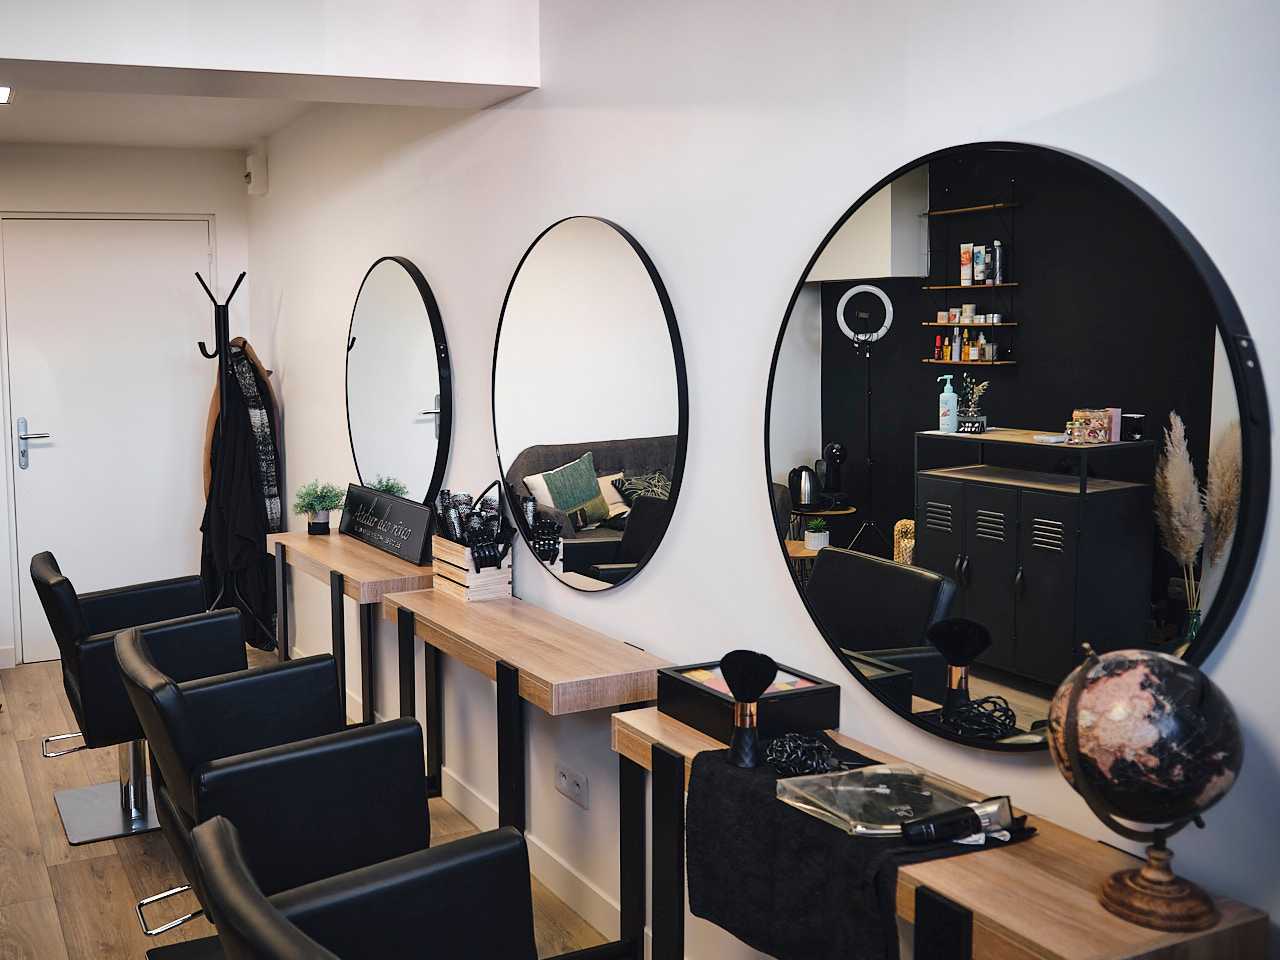 Le salon de MK Hairstylist, on y voit les chaises de coupe face aux miroirs